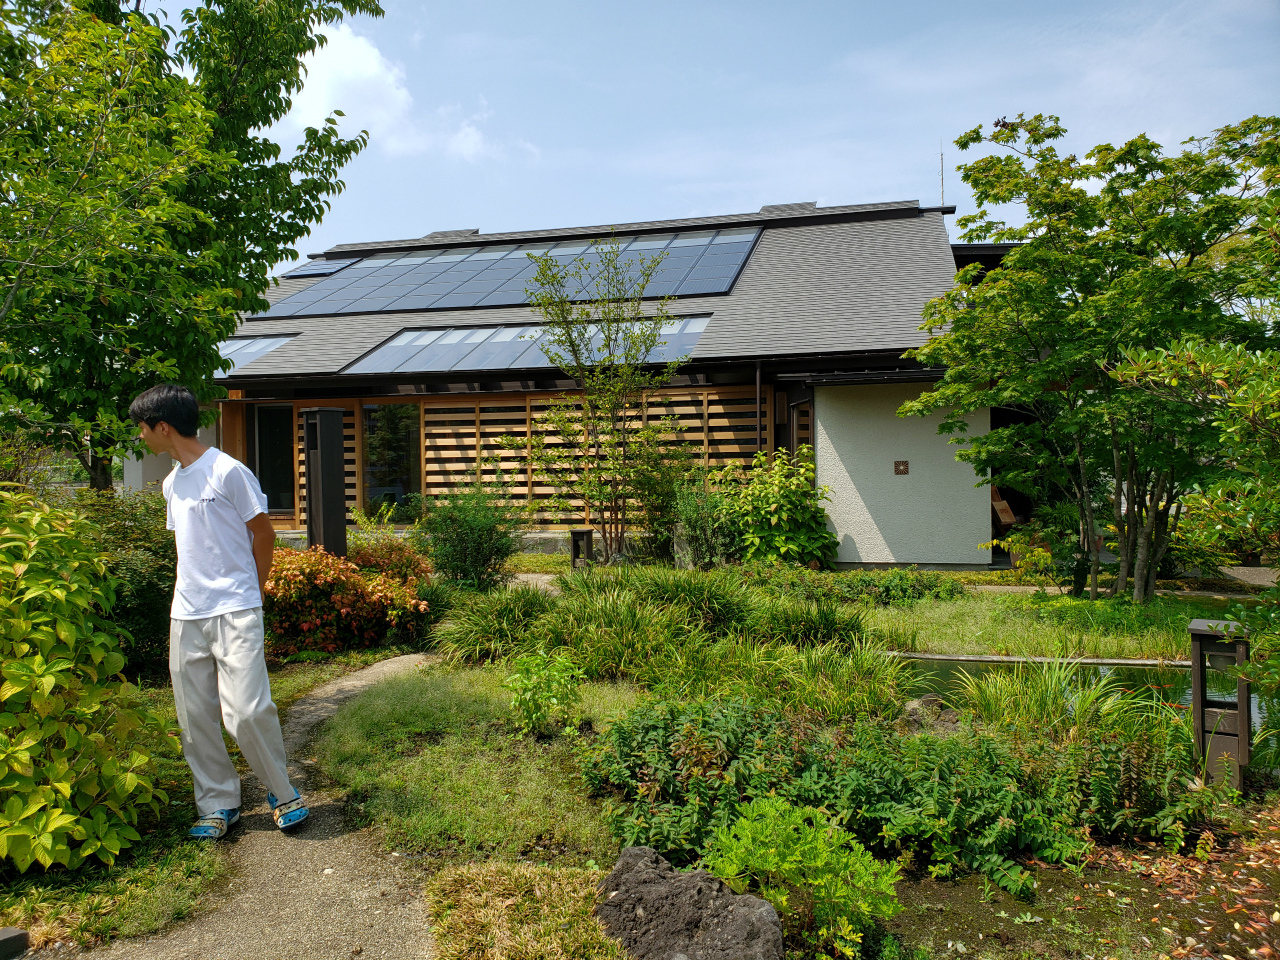 群馬県伊勢崎市で薪ストーブや自然素材を使った木の家のデザインされた注文住宅を建てるなら小林建設